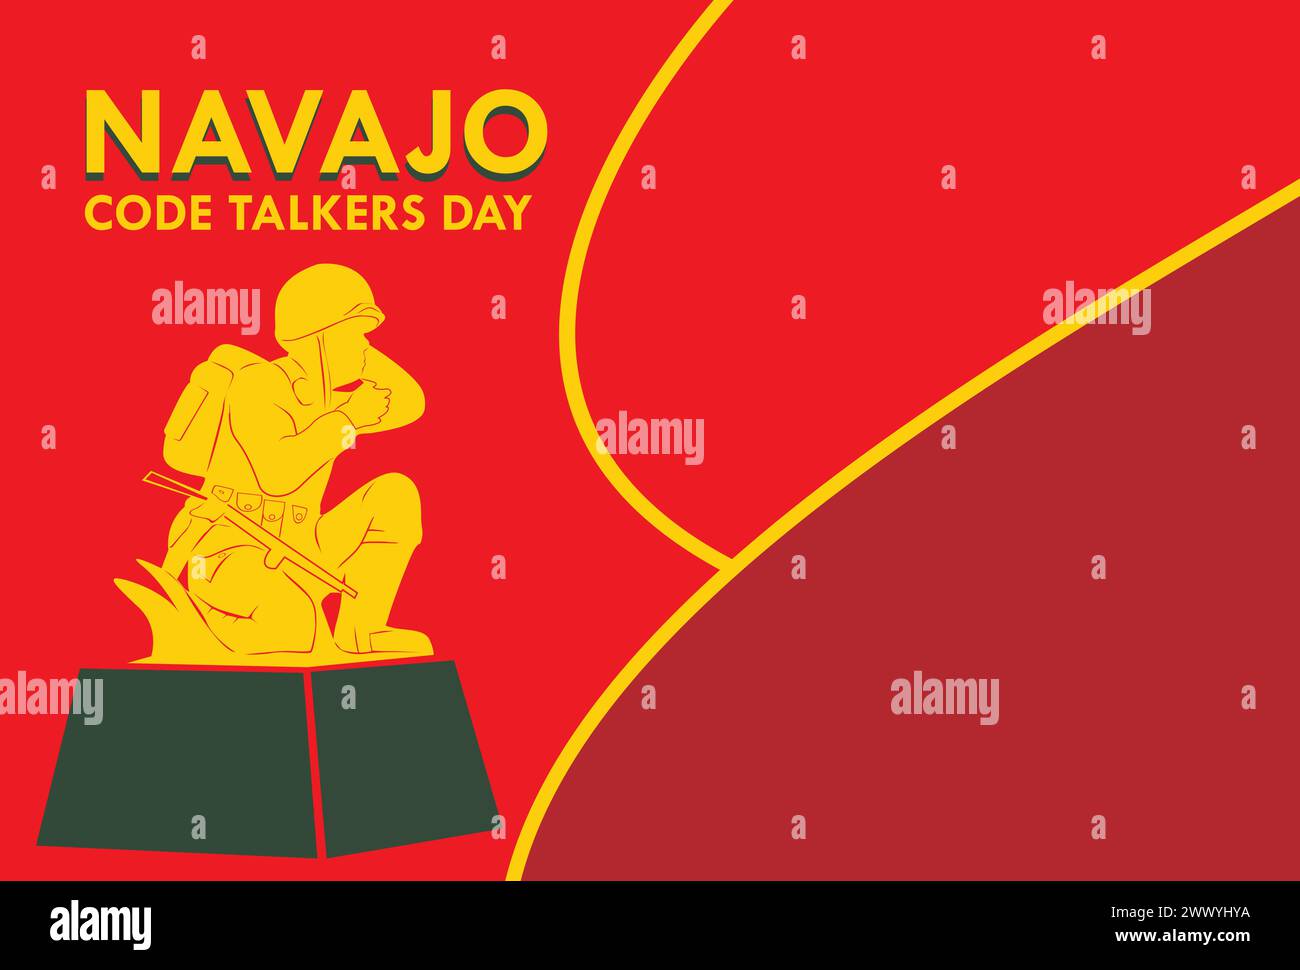 Design anlässlich des Navajo Code Talkers Day, 14. August. Codesprecher sind Menschen, die während des Krieges vom Militär beschäftigt werden Stock Vektor